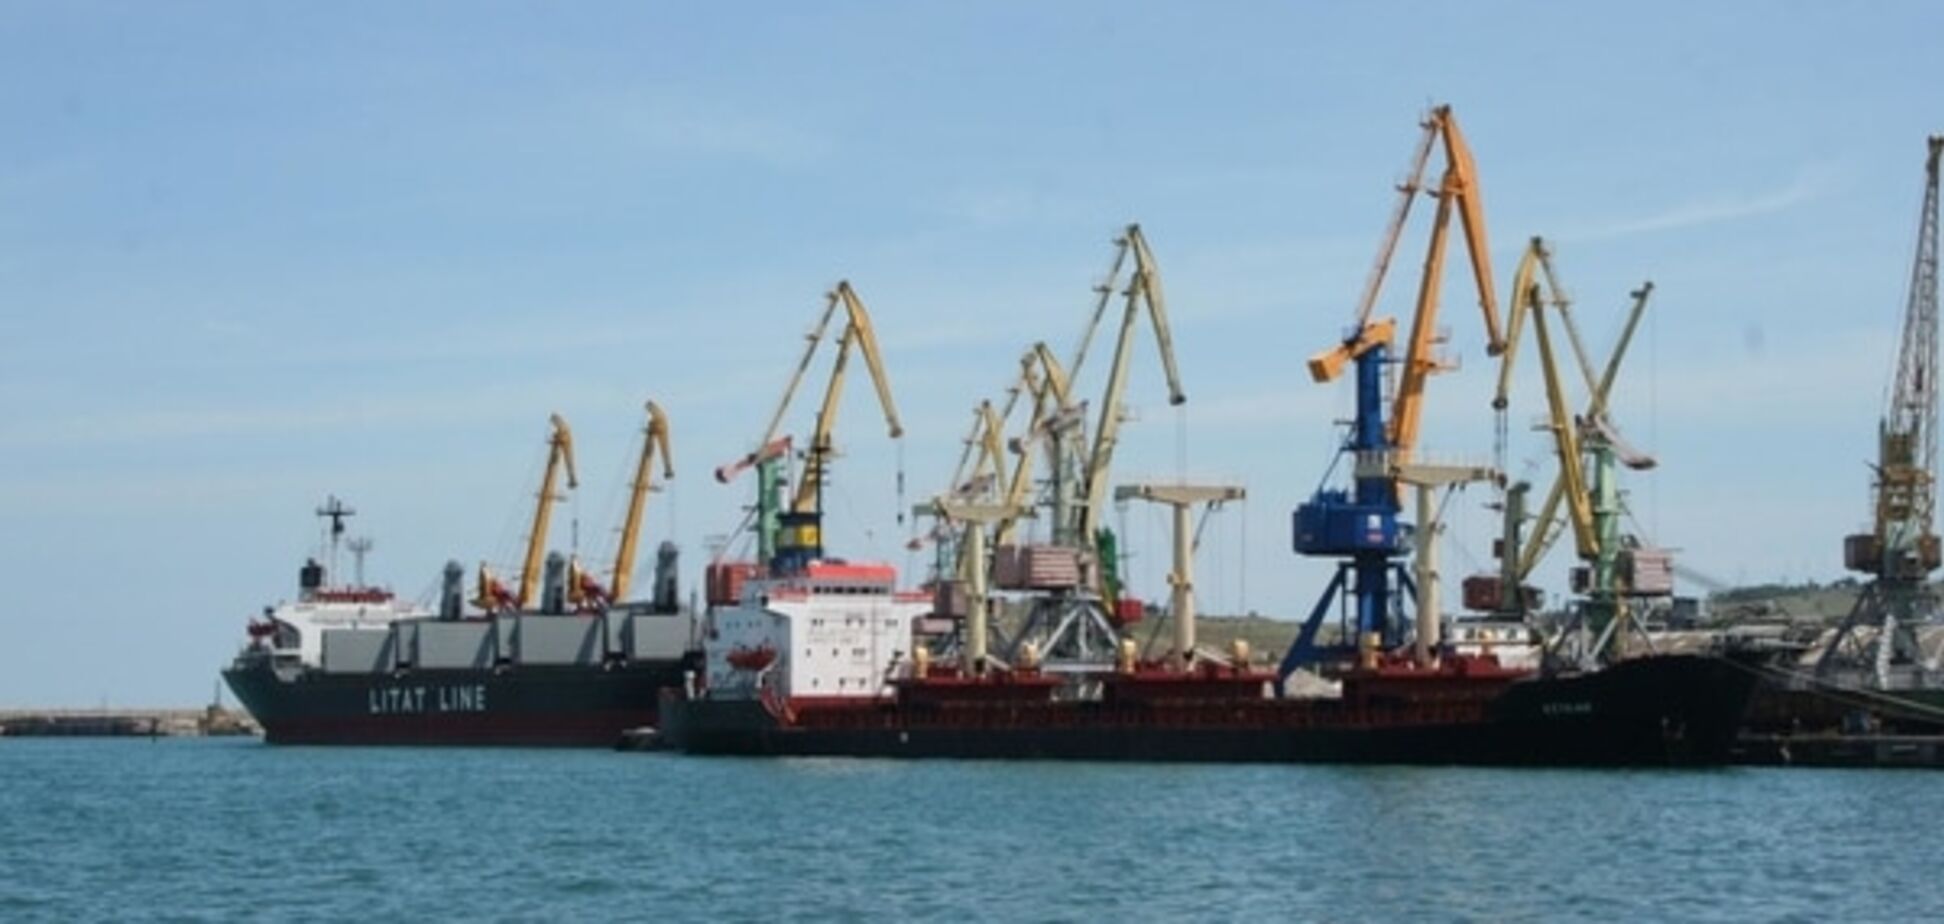 Дерегуляция в портах поможет удешевить импортные товары – экспедиторы